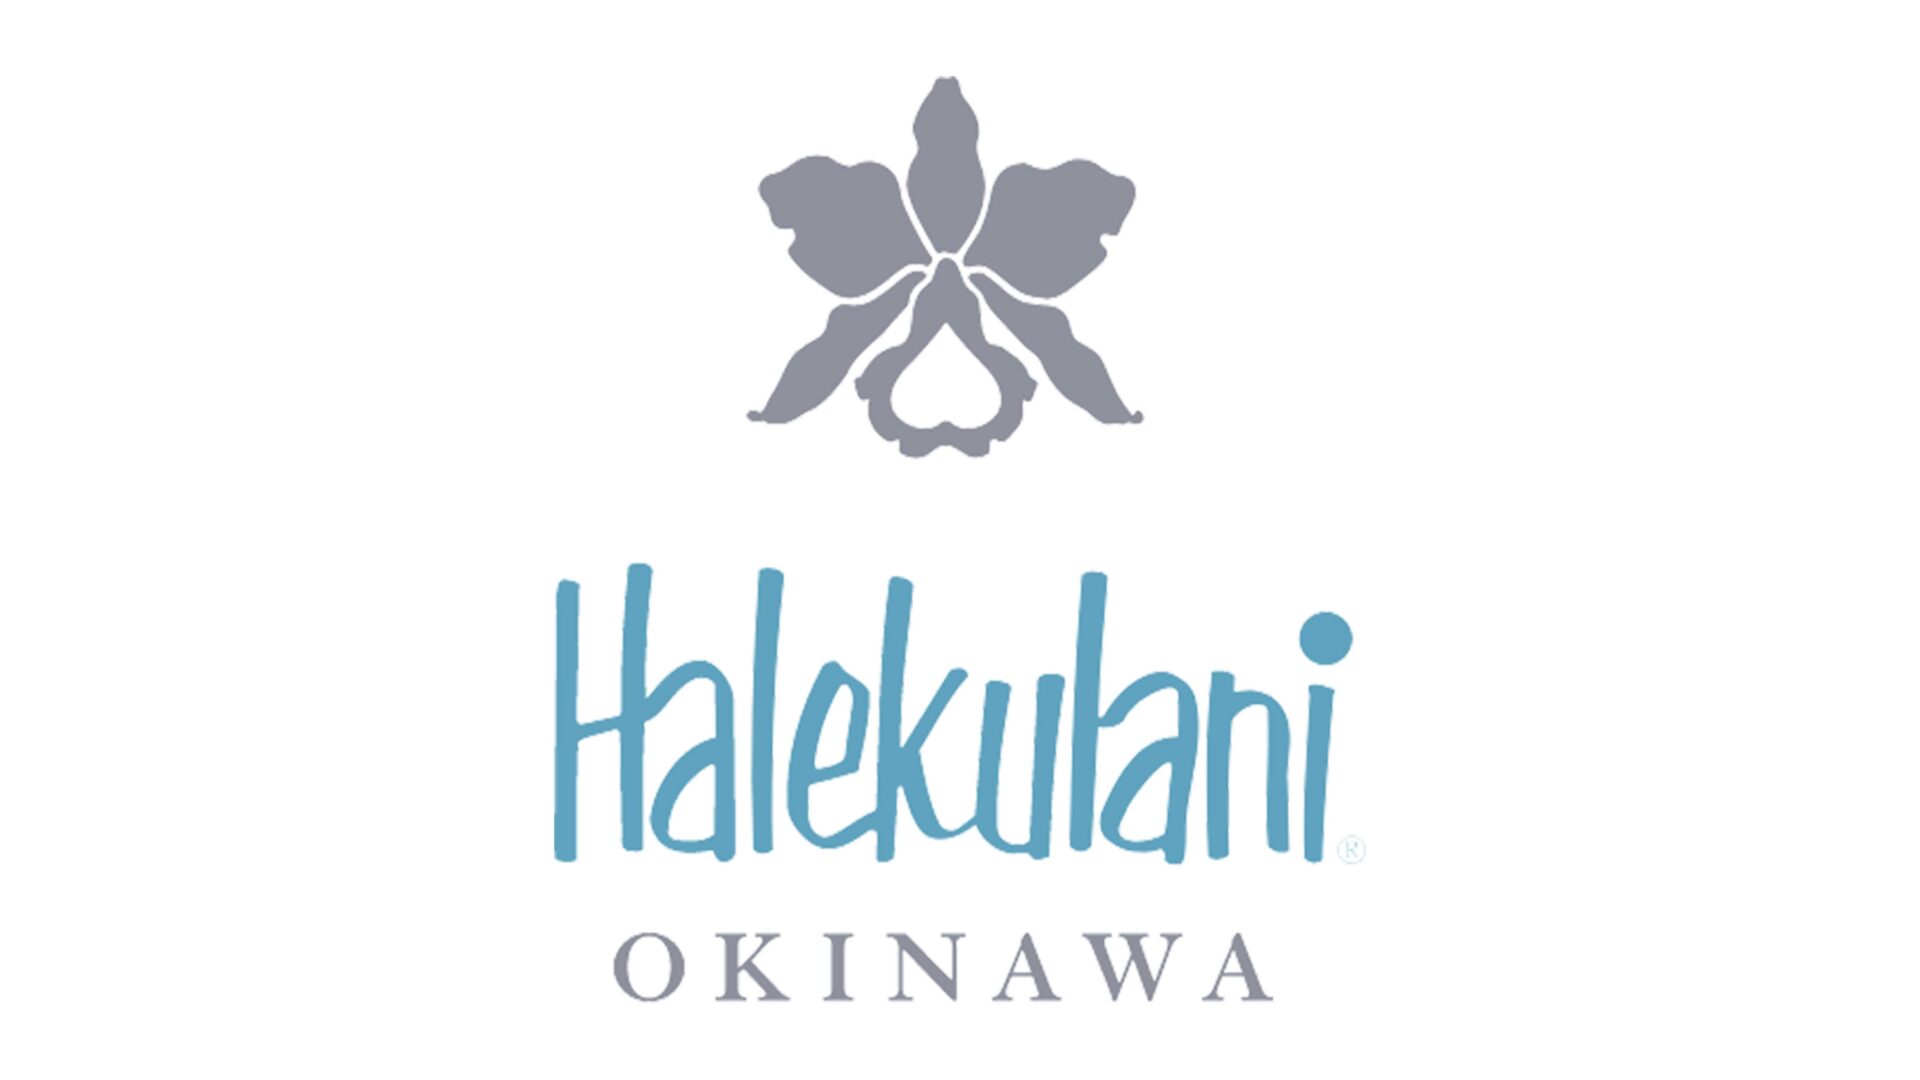 天国の名にもっともふさわしい楽園と呼ばれるハレクラニ沖縄のロゴ